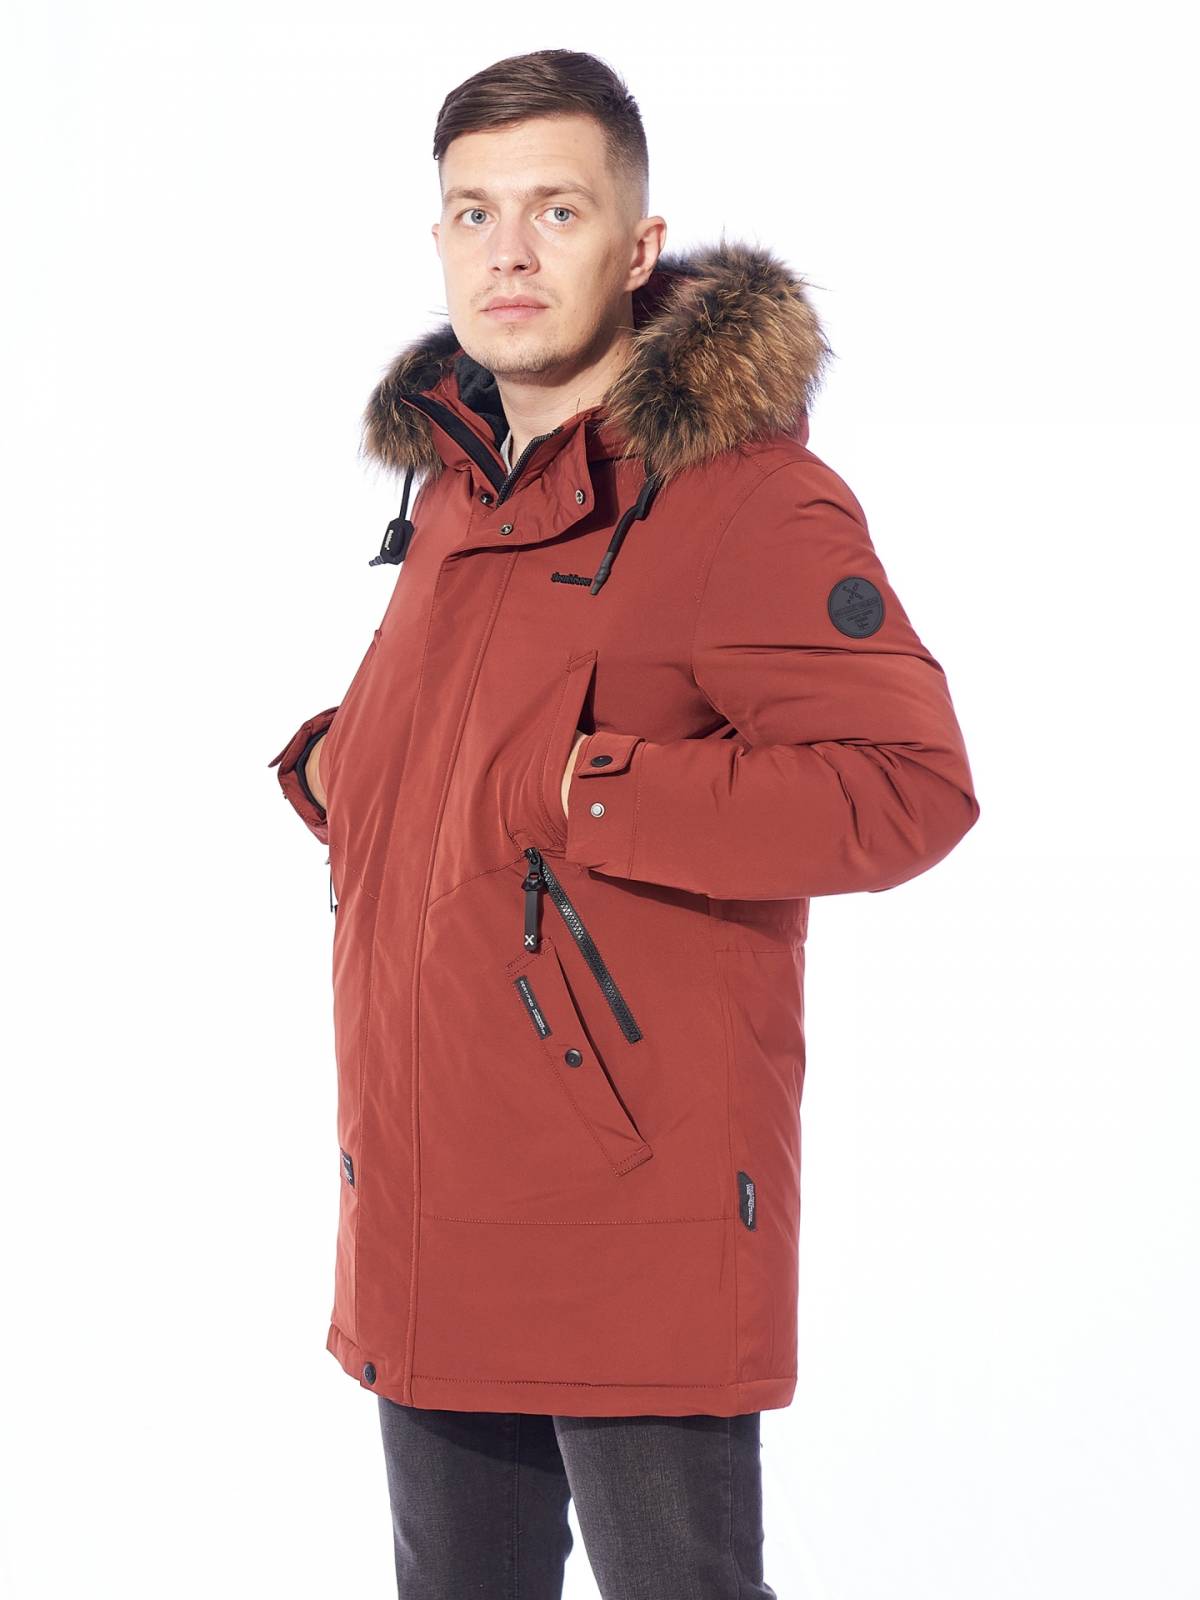 Зимняя куртка мужская Shark Force 4051 красная 56 RU